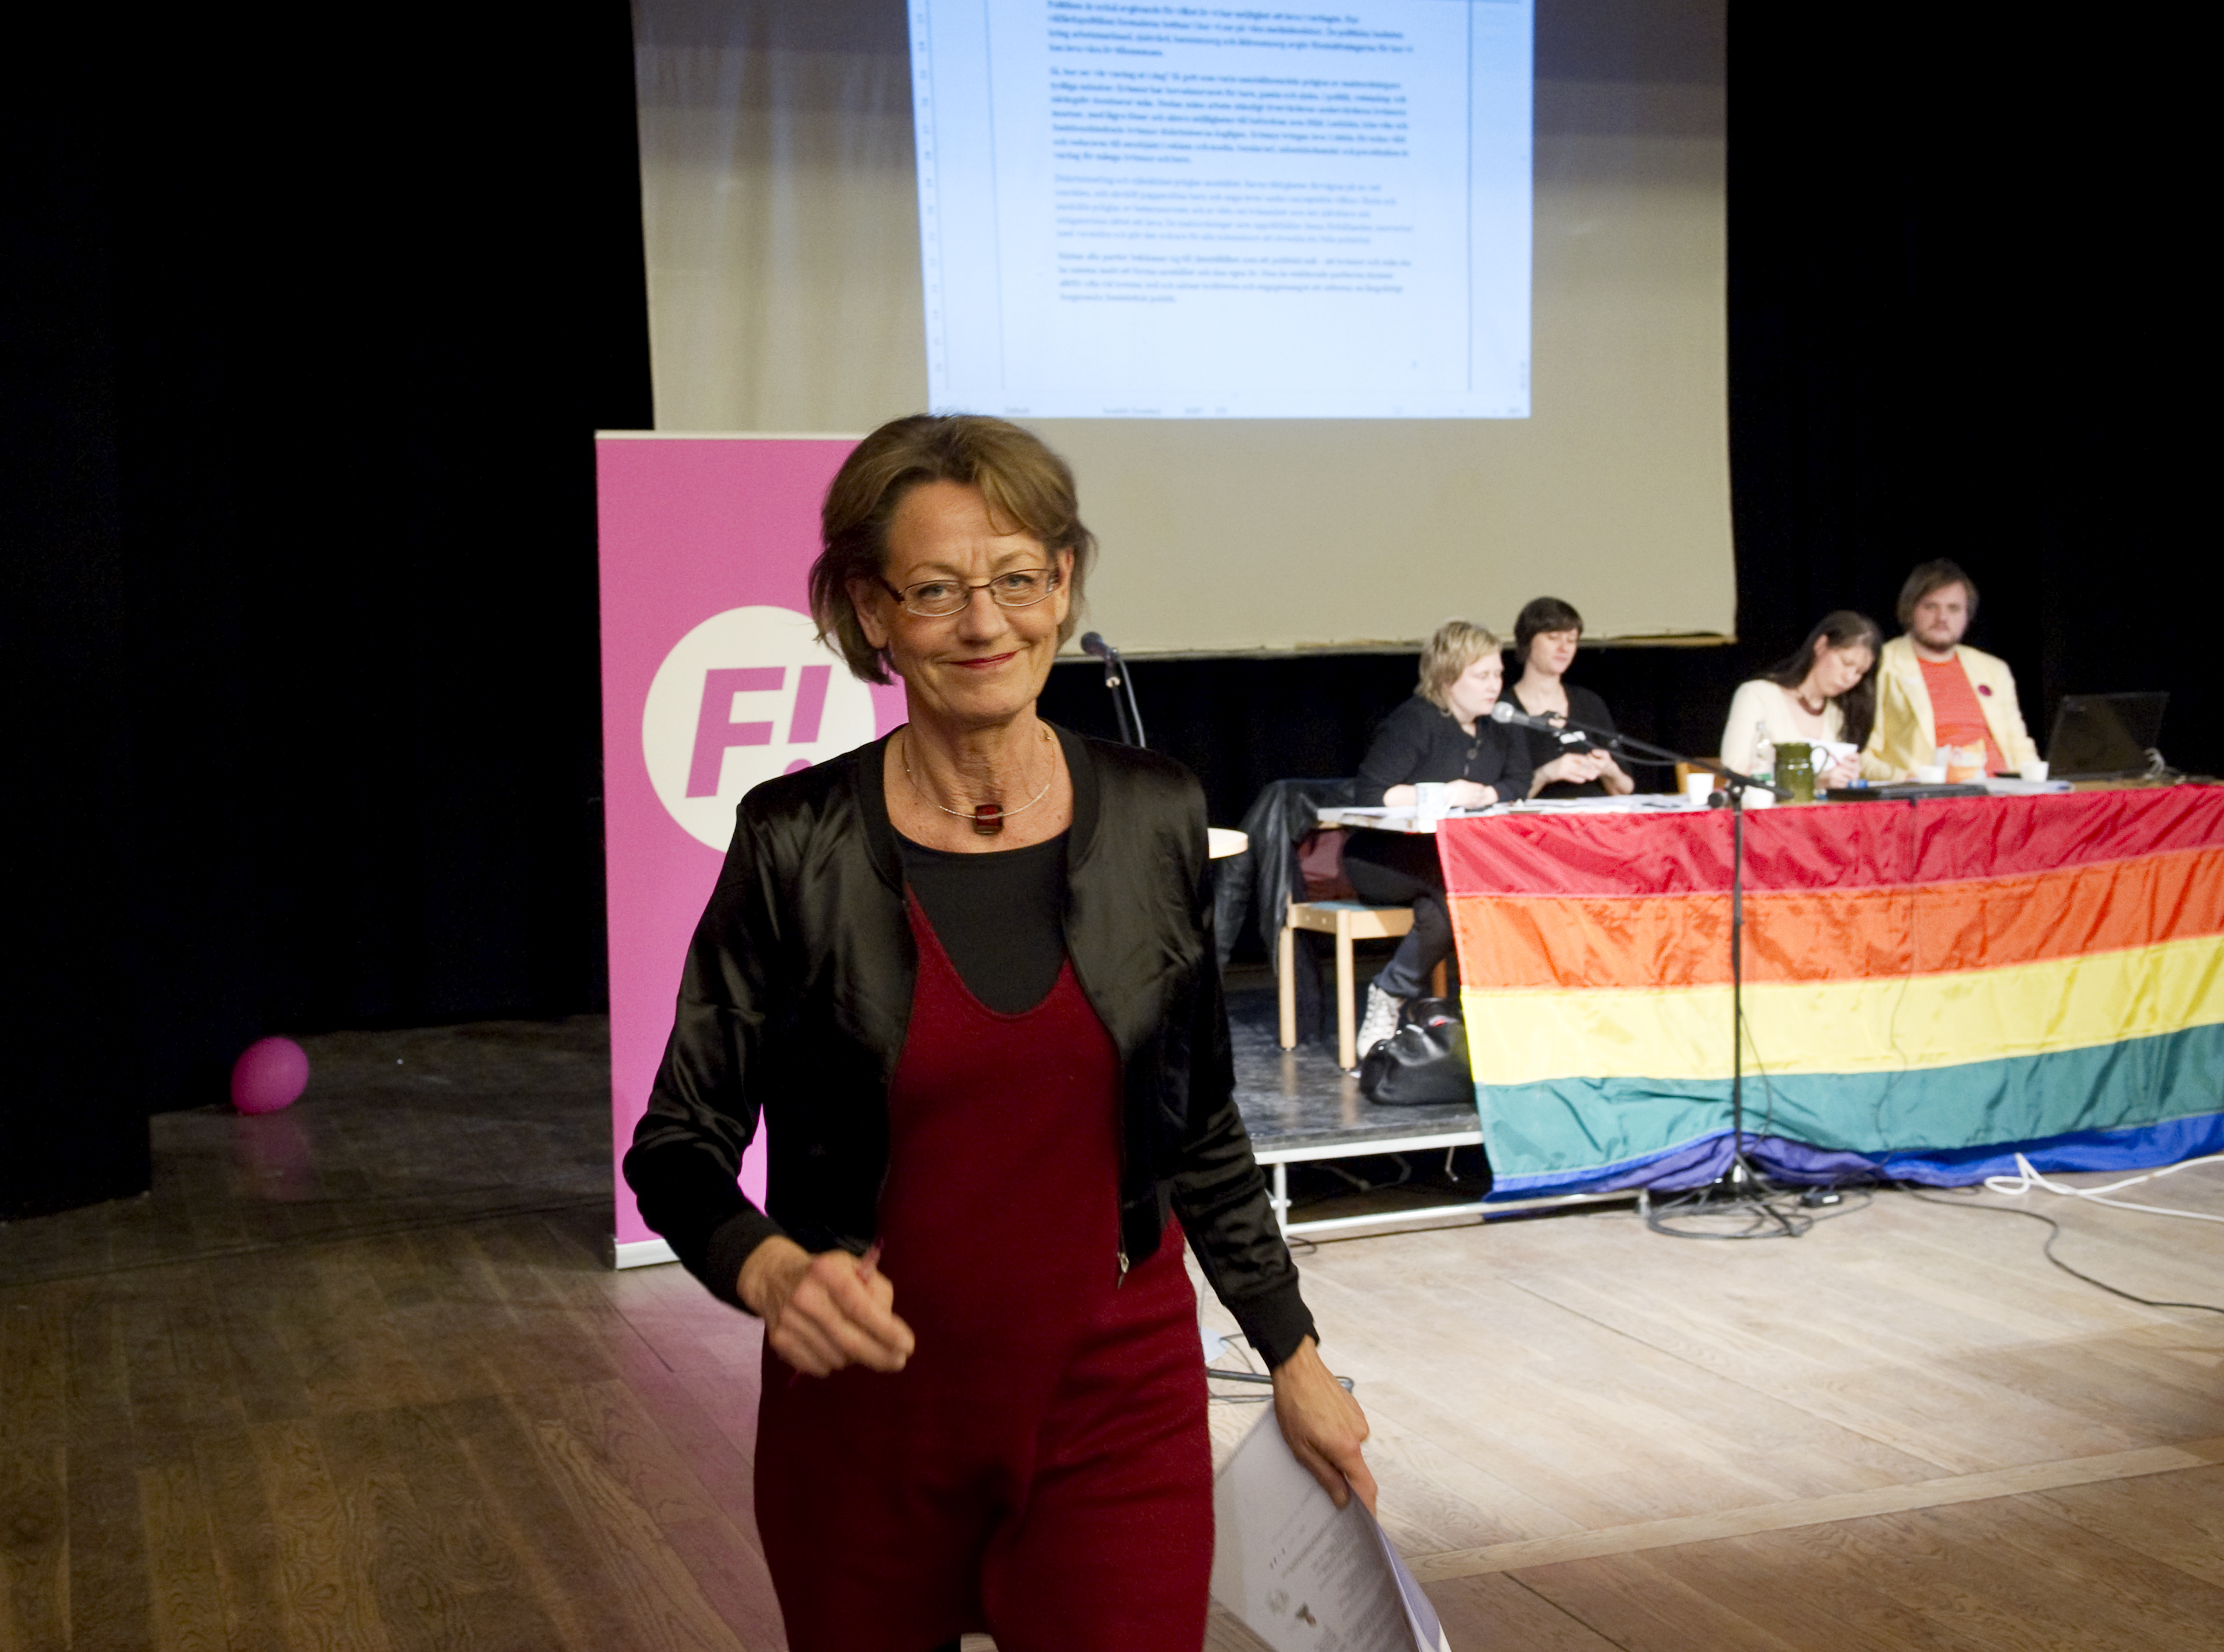 Feministiskt initiativ, Lönediskriminering, Gudrun Schyman, Arbetsmarknad, Riksdagsvalet 2010